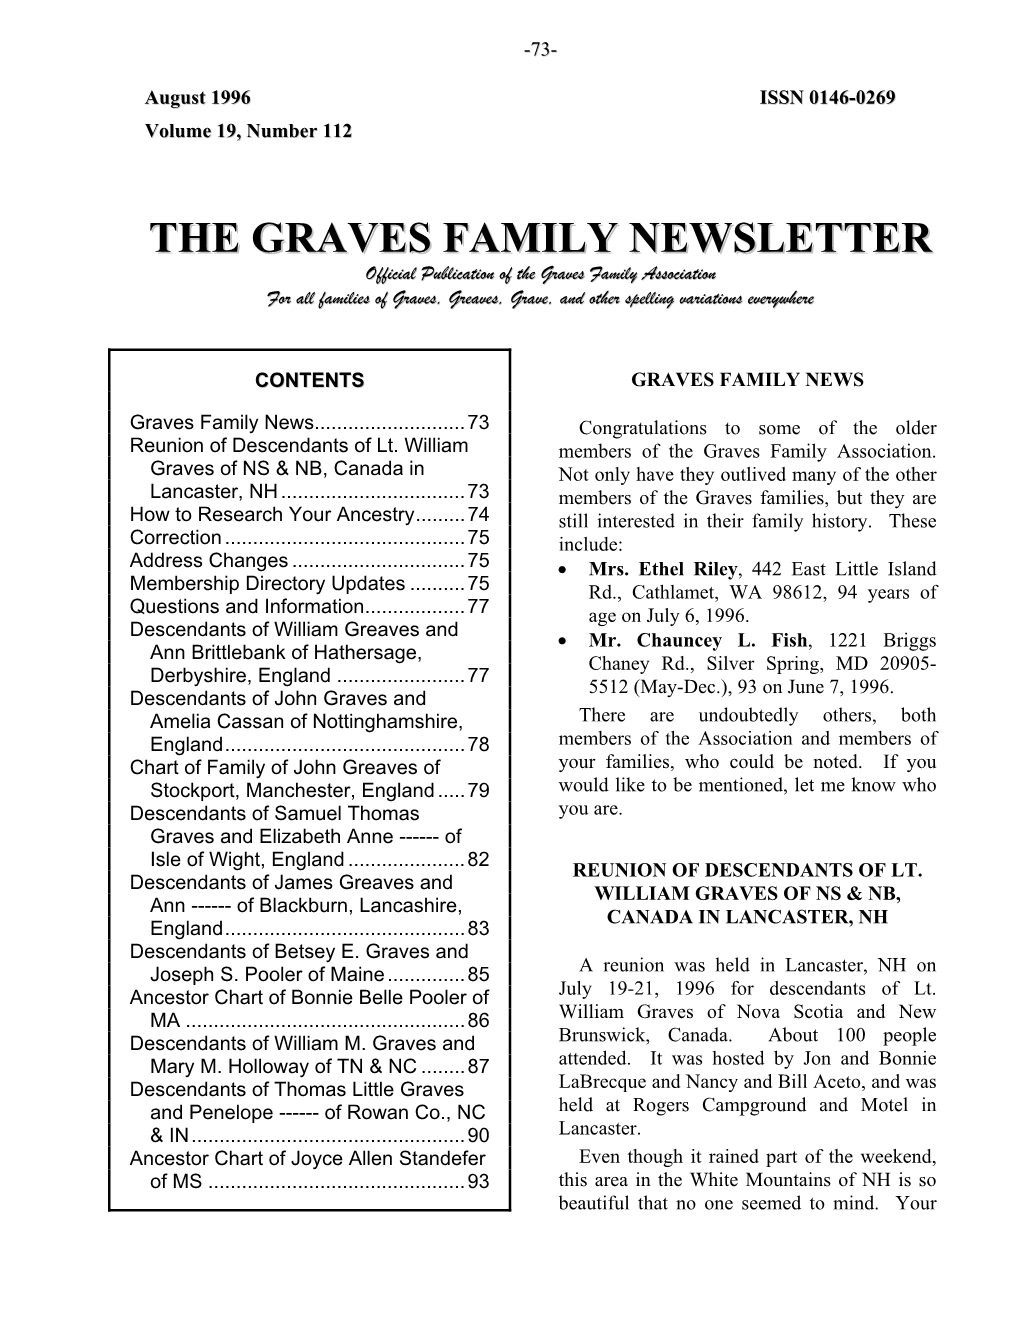 Graves Family Newsletter, August 1996